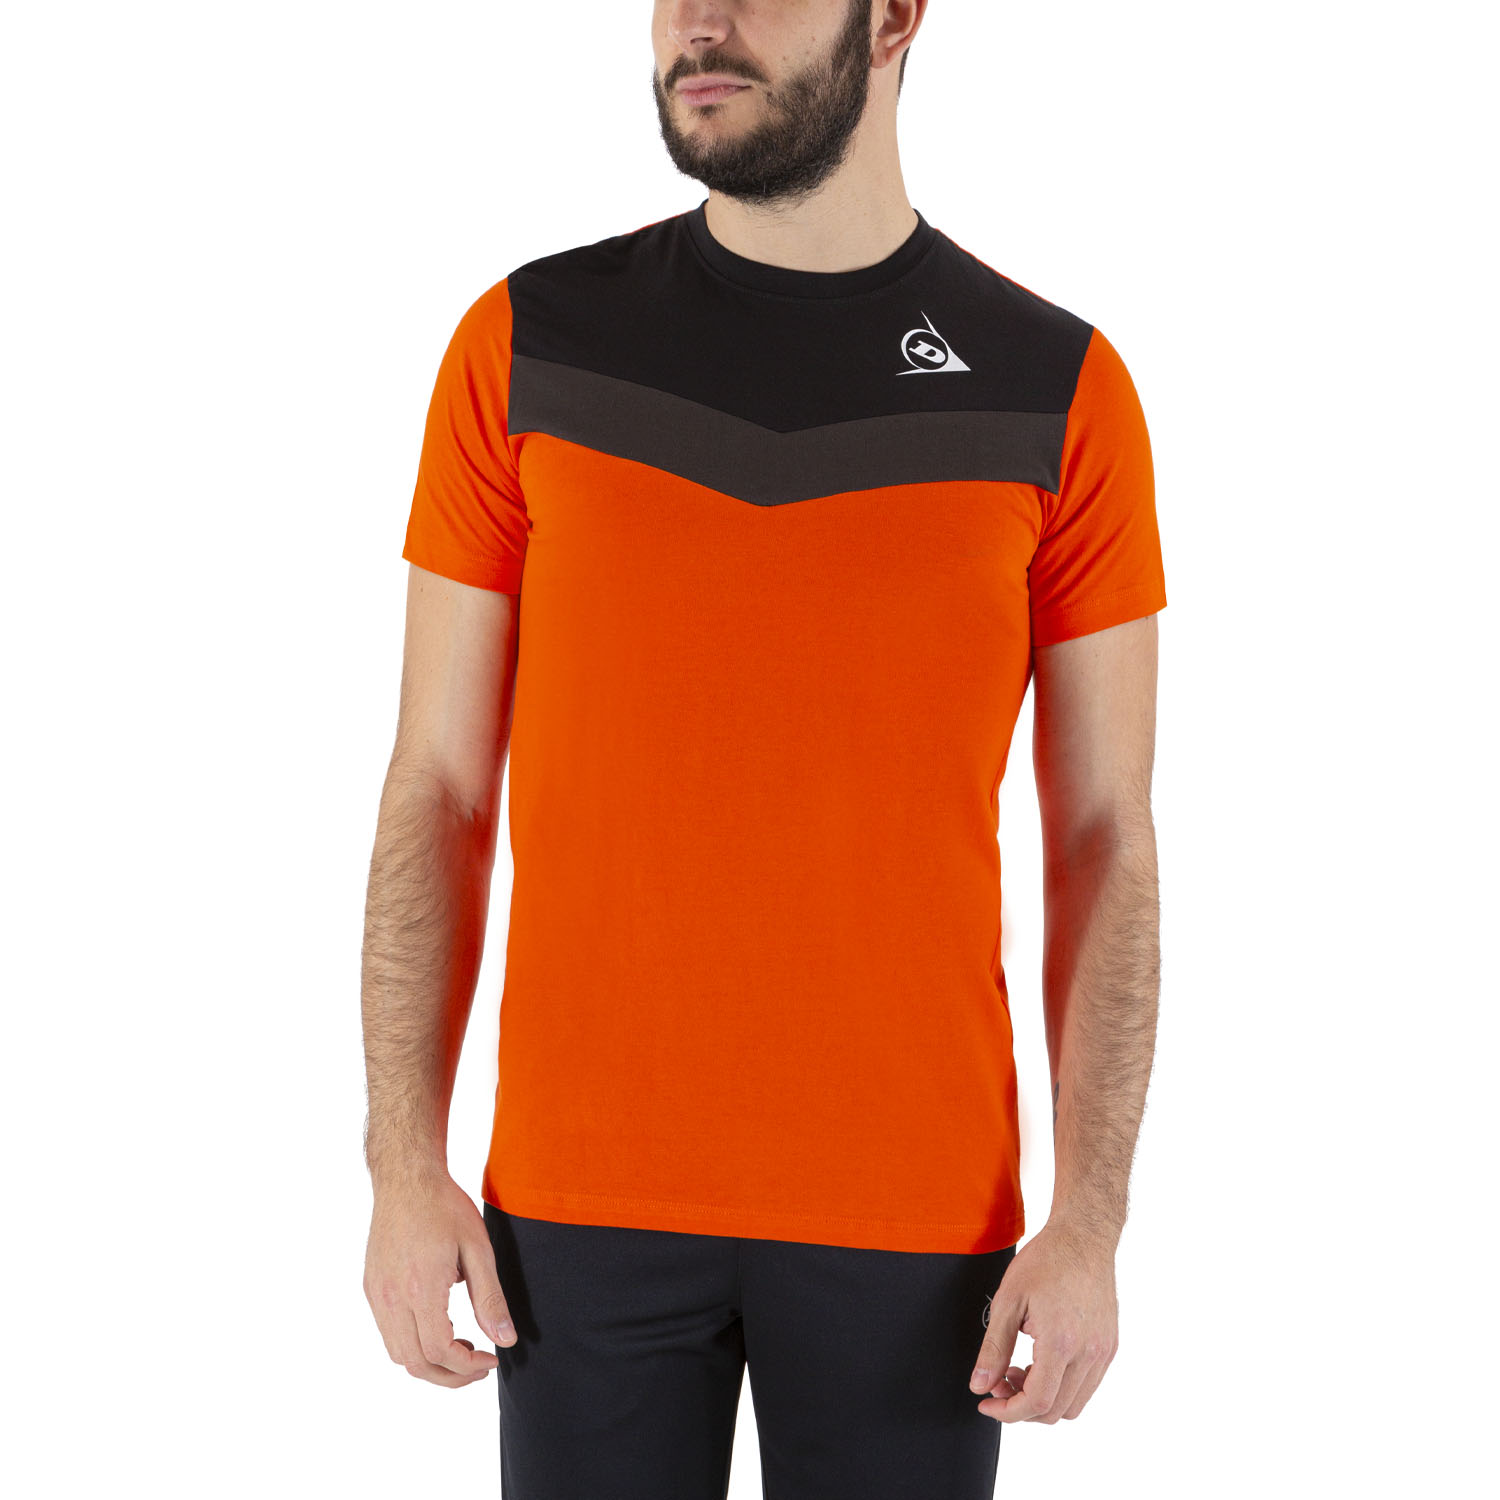 Descarte secuencia Tacto Dunlop Crew Essentials Camiseta de Tenis Hombre - Orange/Anthra